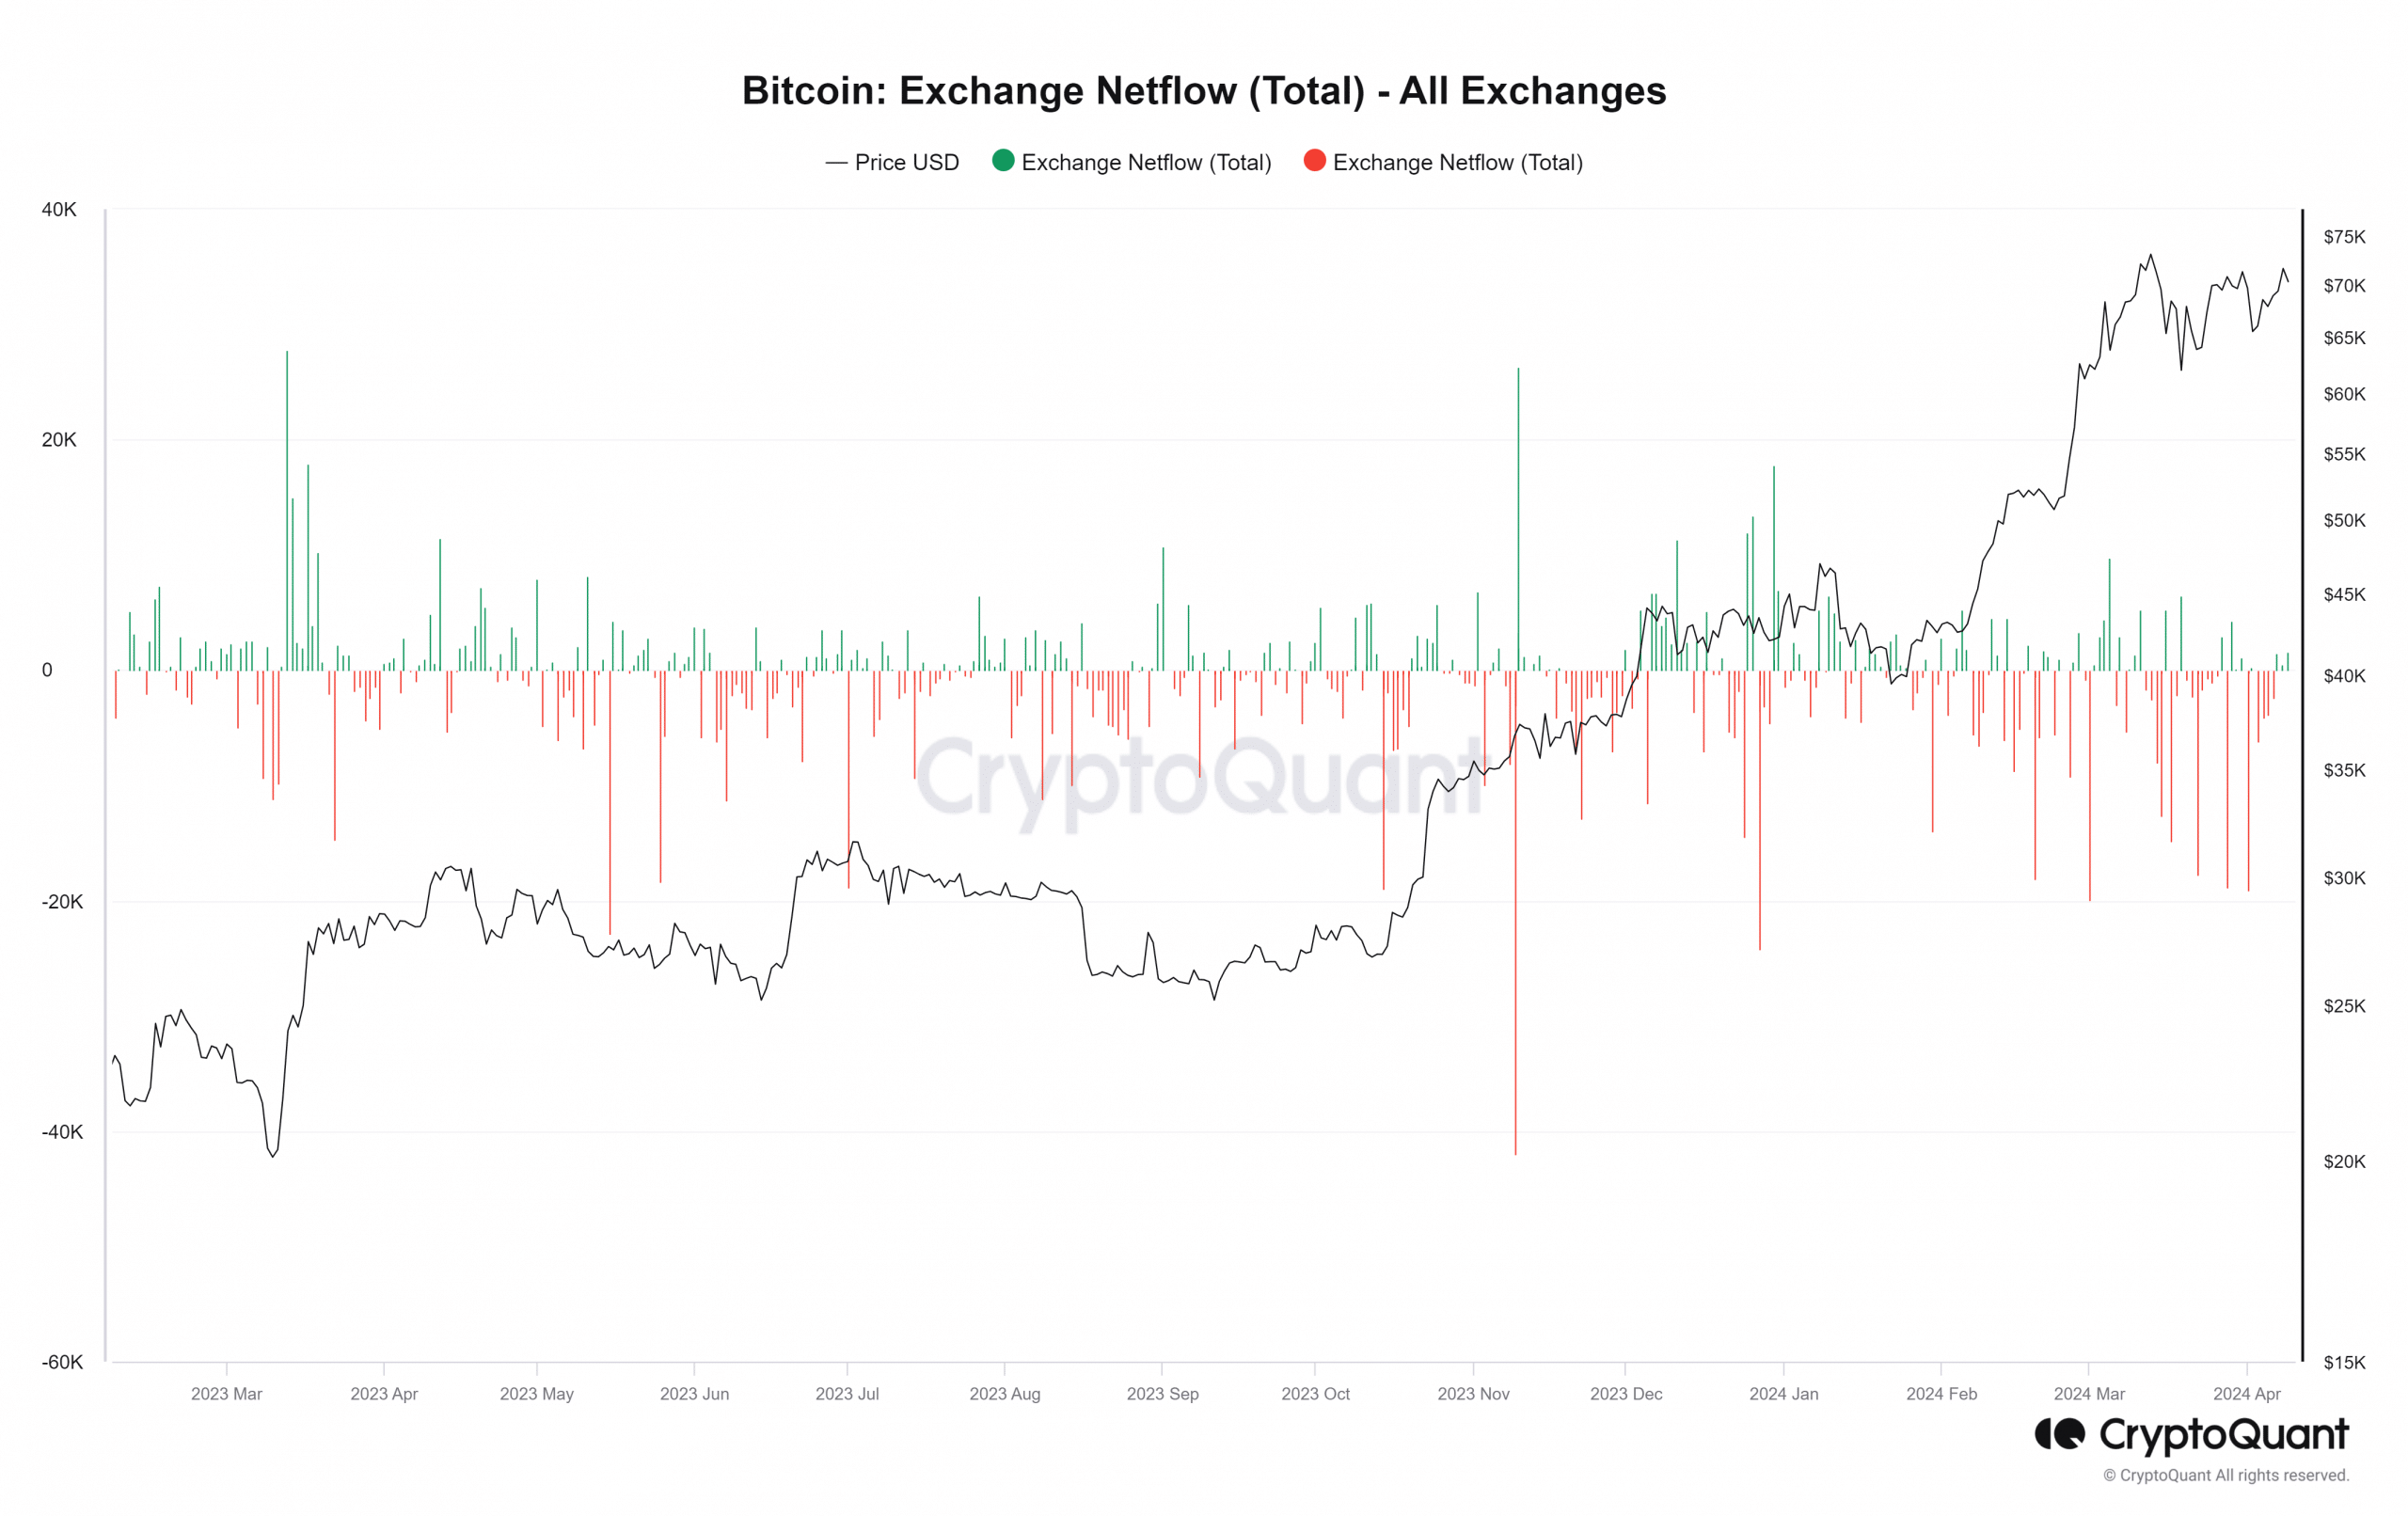 Bitcoin exchange net flow